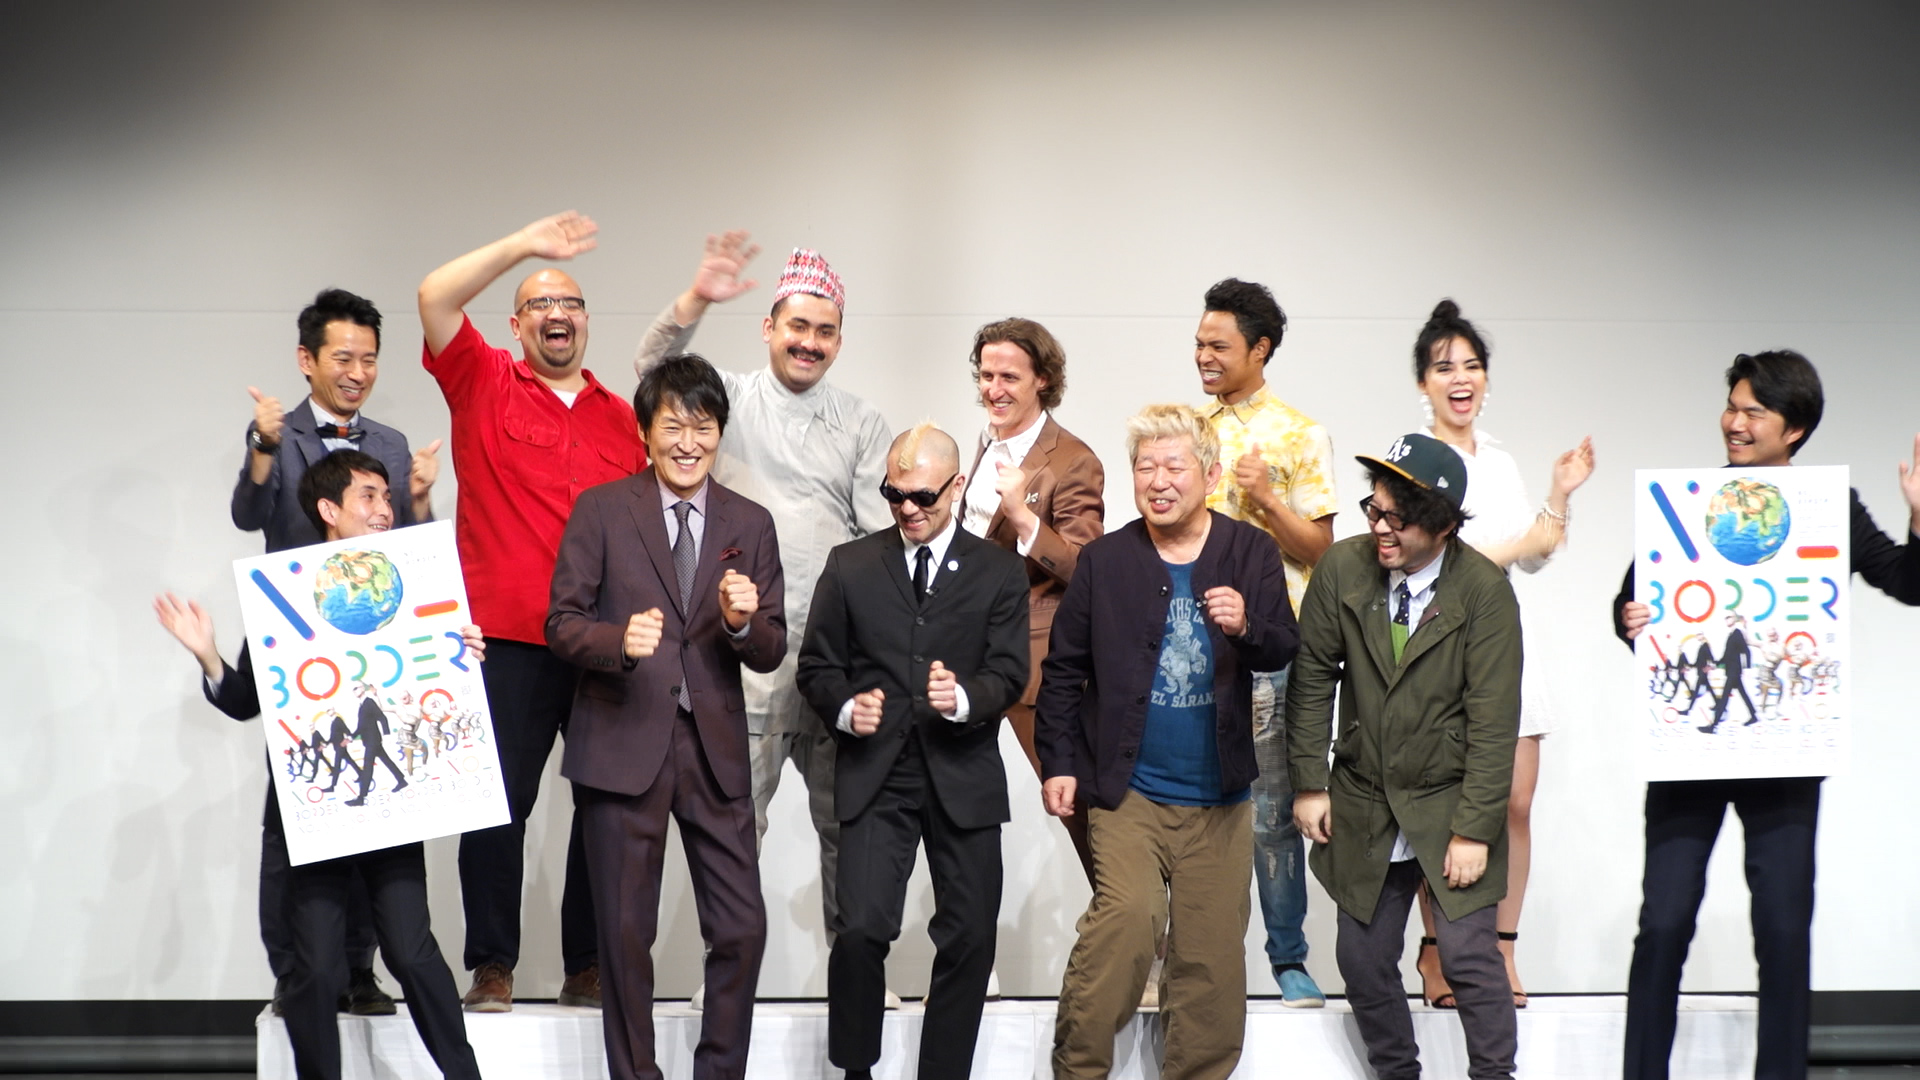 よしもとのハーフ芸人も大集合！観客がアバターになって踊る「NO BORDER」大阪で開催決定！